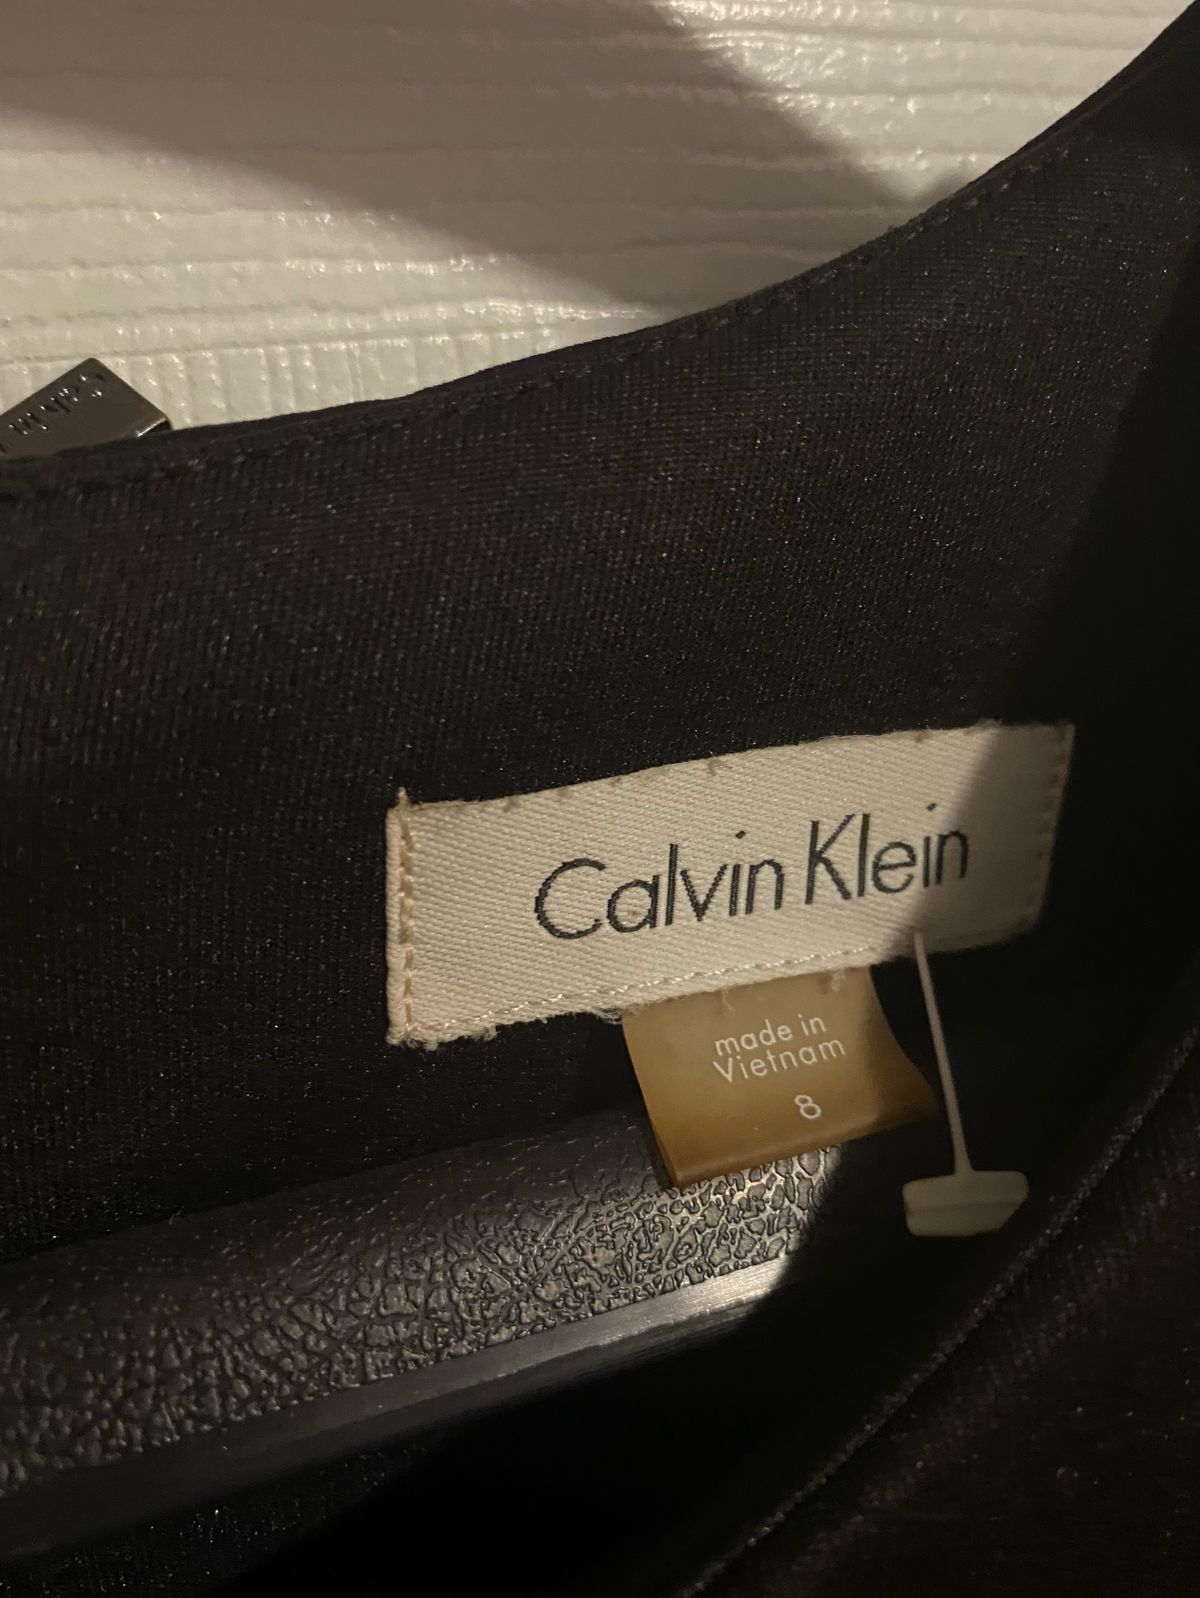 Calvin Klein Size 8 Black Cocktail Dress on Queenly